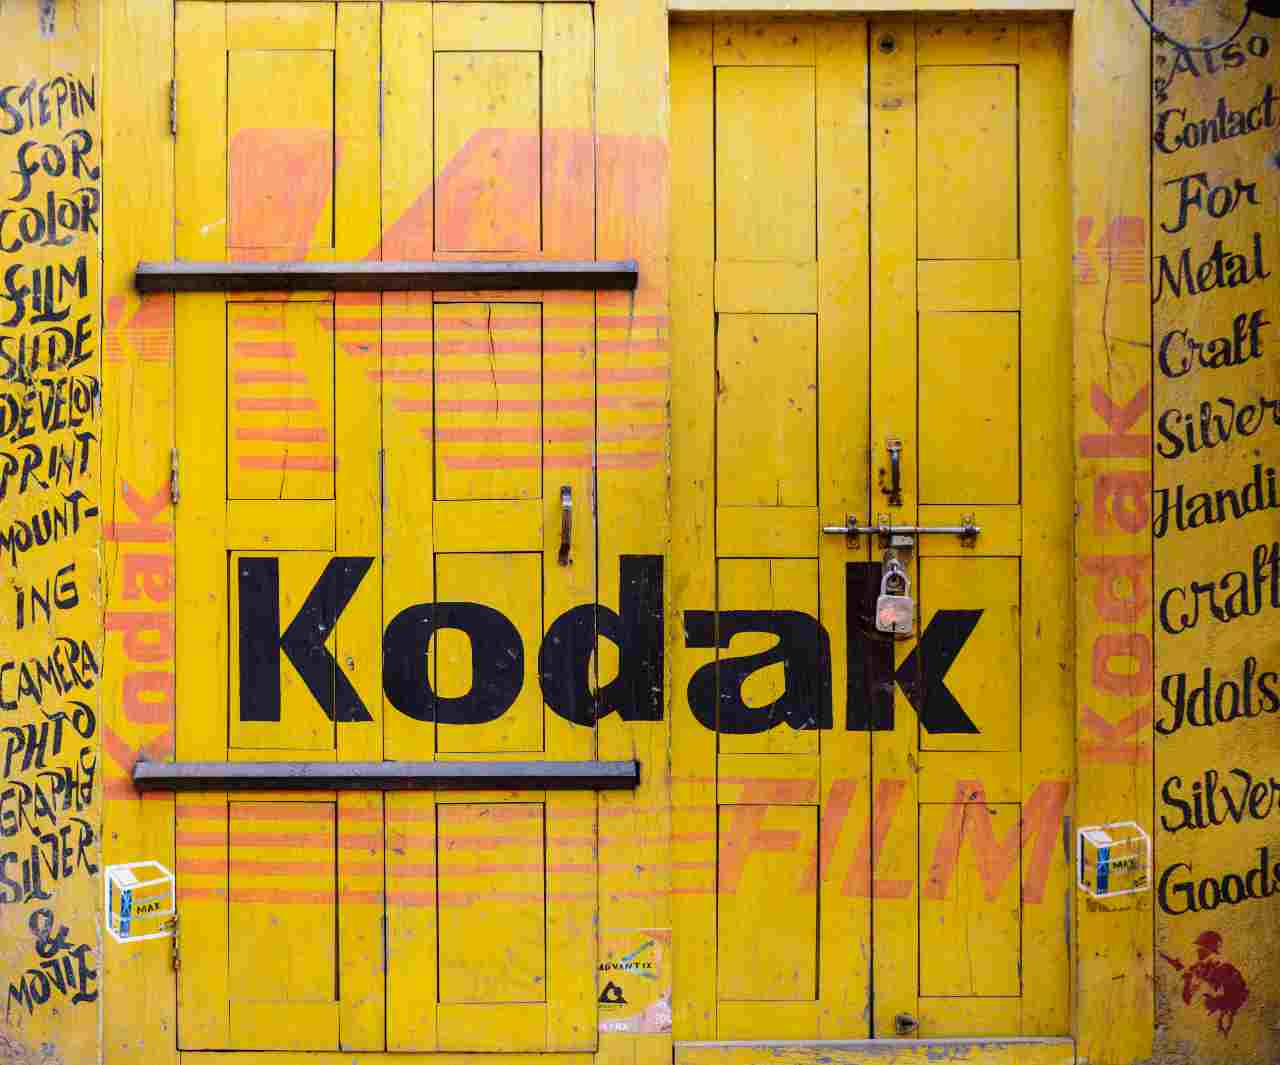 Kodak (Adobe Stock)